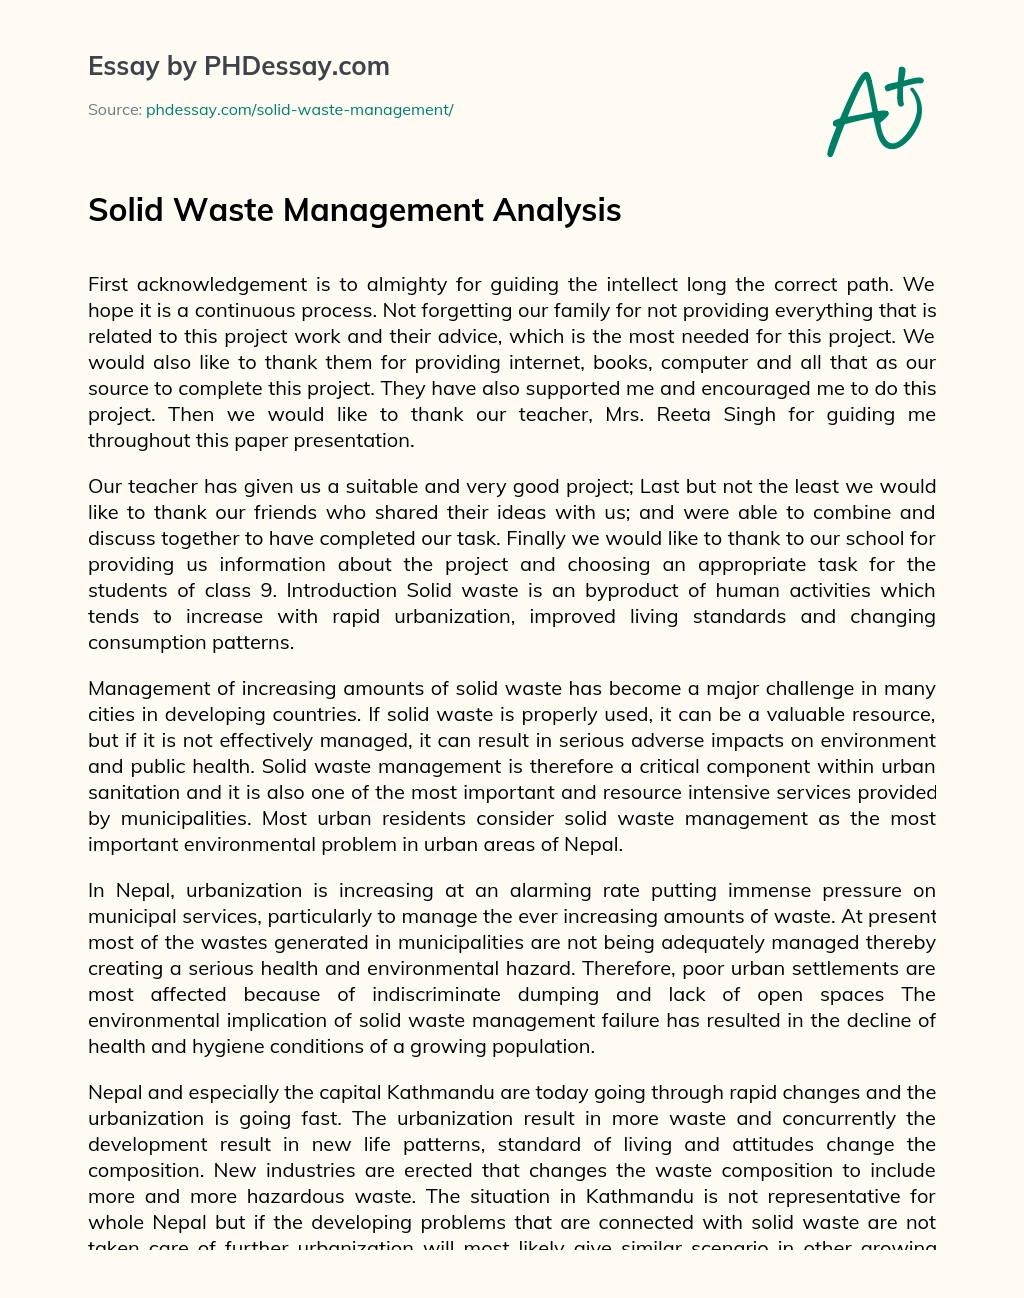 solid waste management essay tagalog